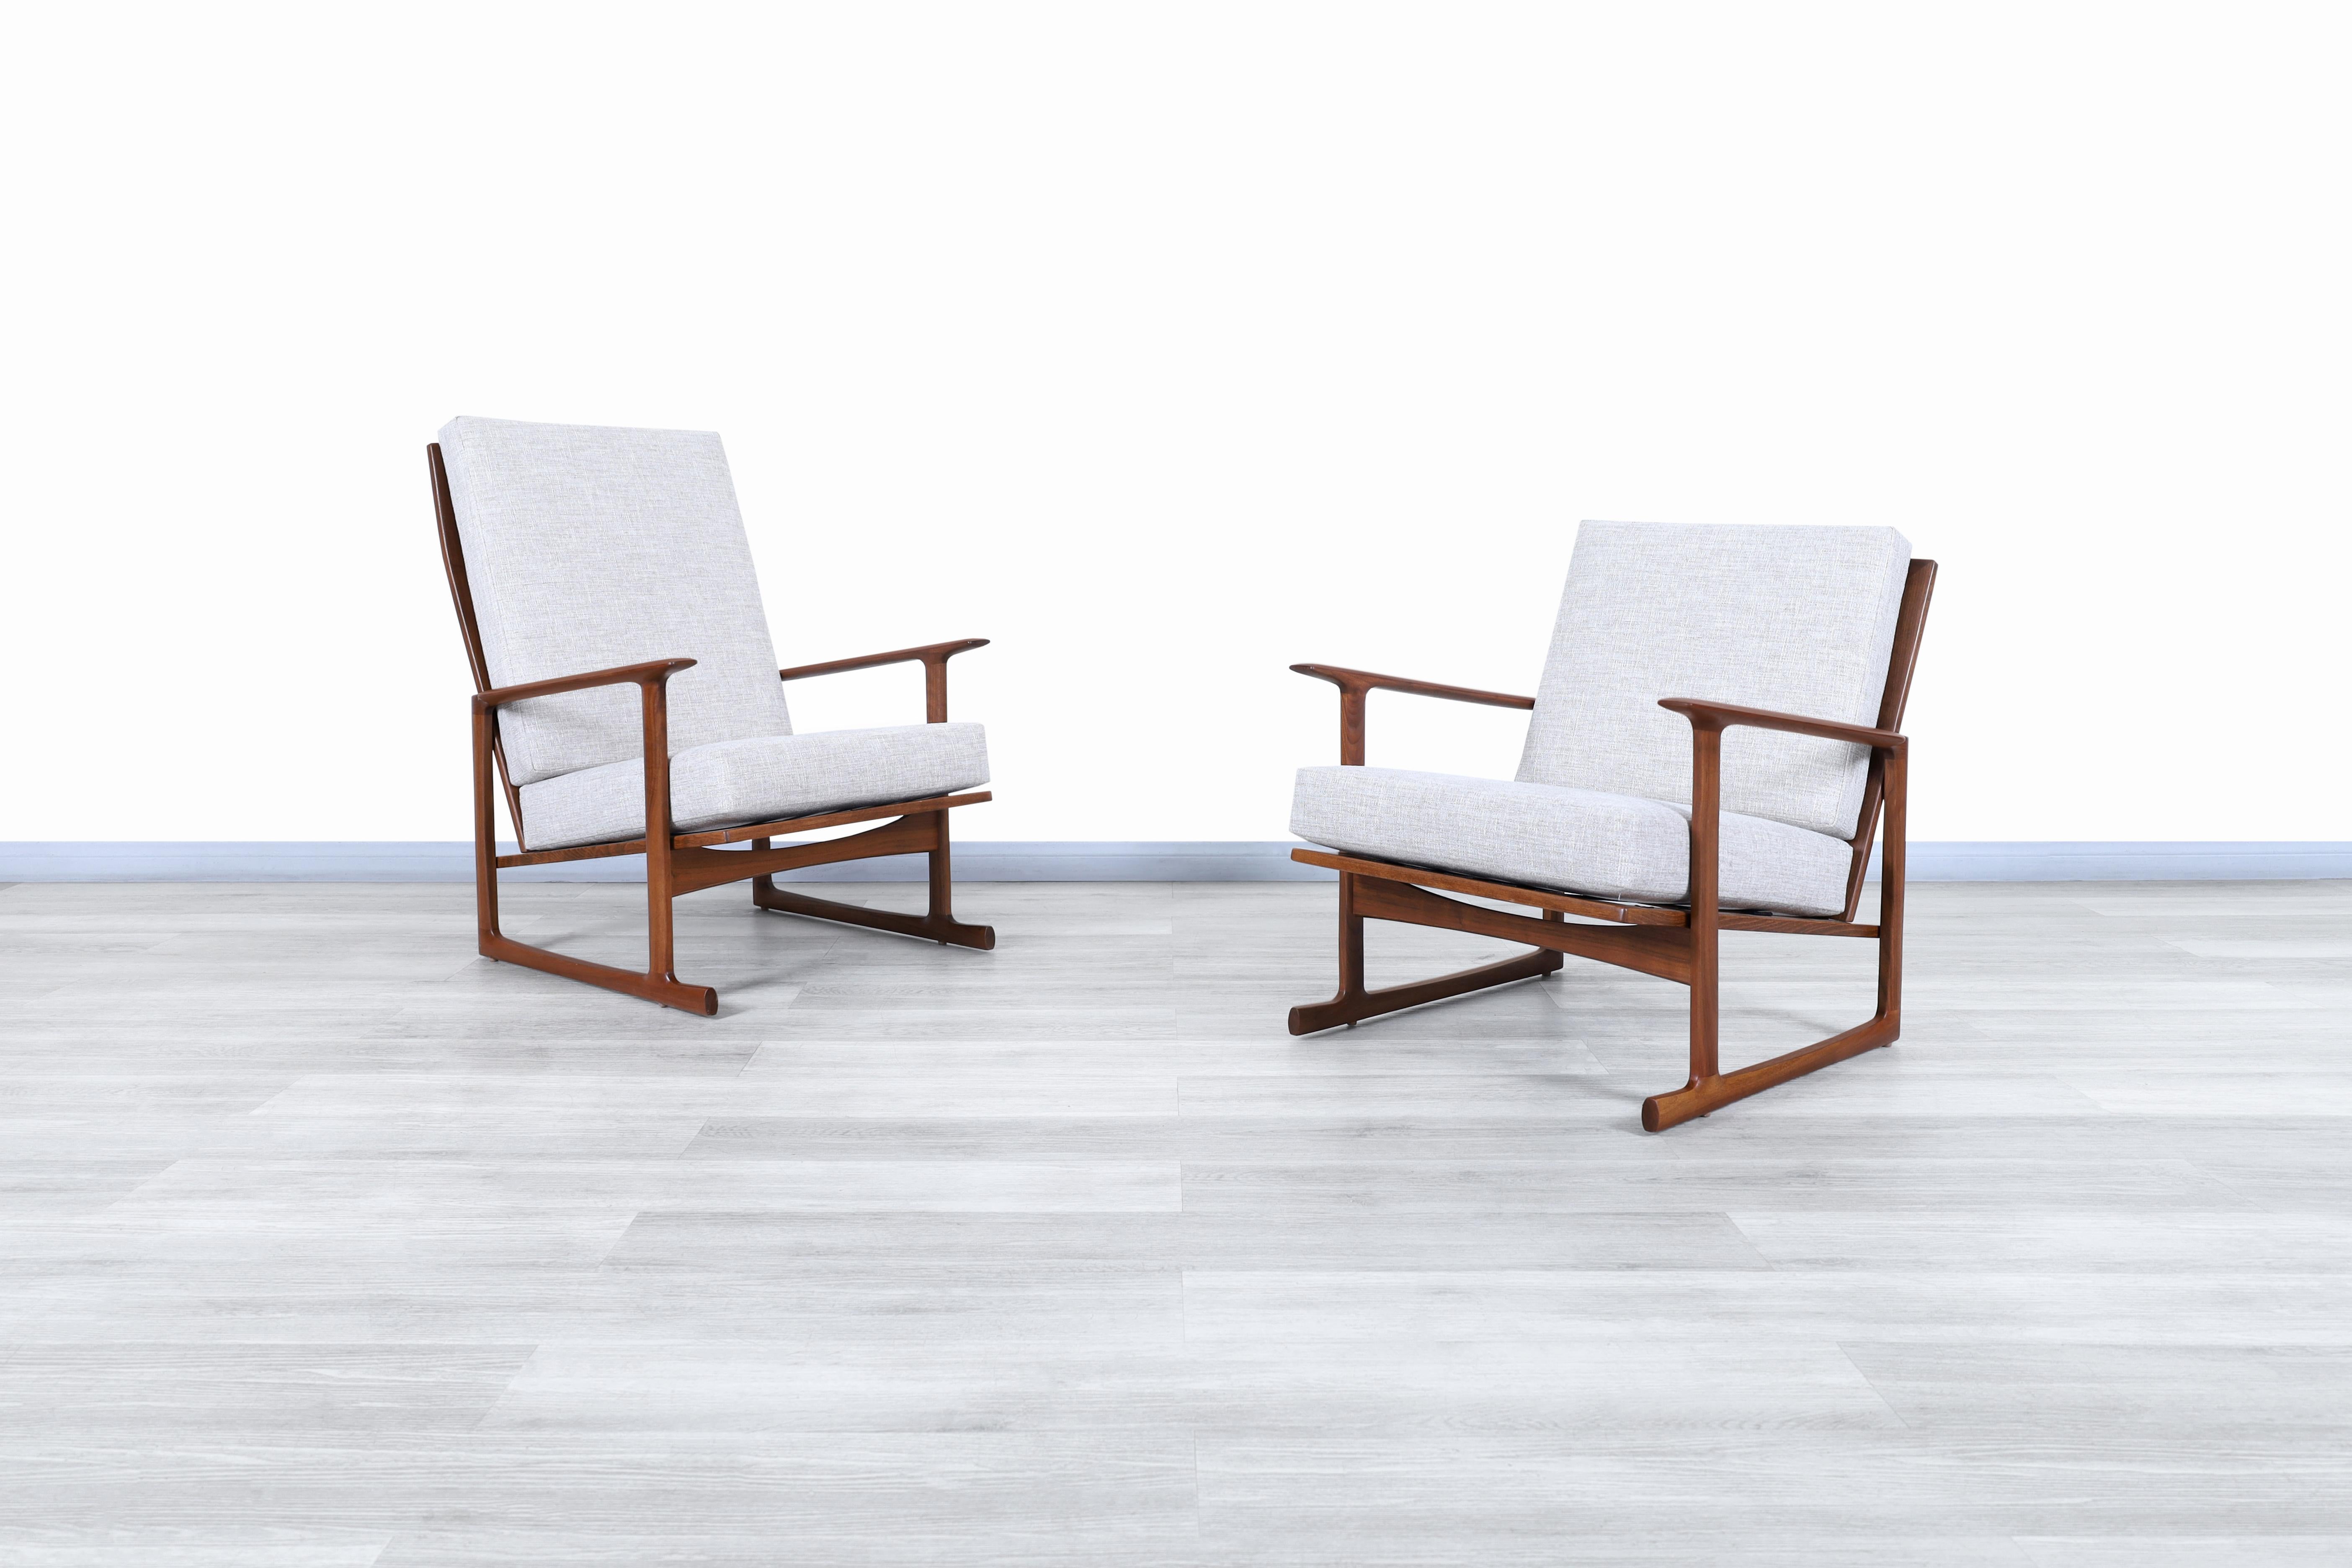 Wunderschöne moderne dänische Loungesessel aus Nussbaumholz vom Architekten und Möbeldesigner Ib Kofod für Selig in Dänemark, ca. 1960er Jahre. Diese Stühle haben ein architektonisches Design, bei dem der Komfort des Benutzers im Vordergrund steht